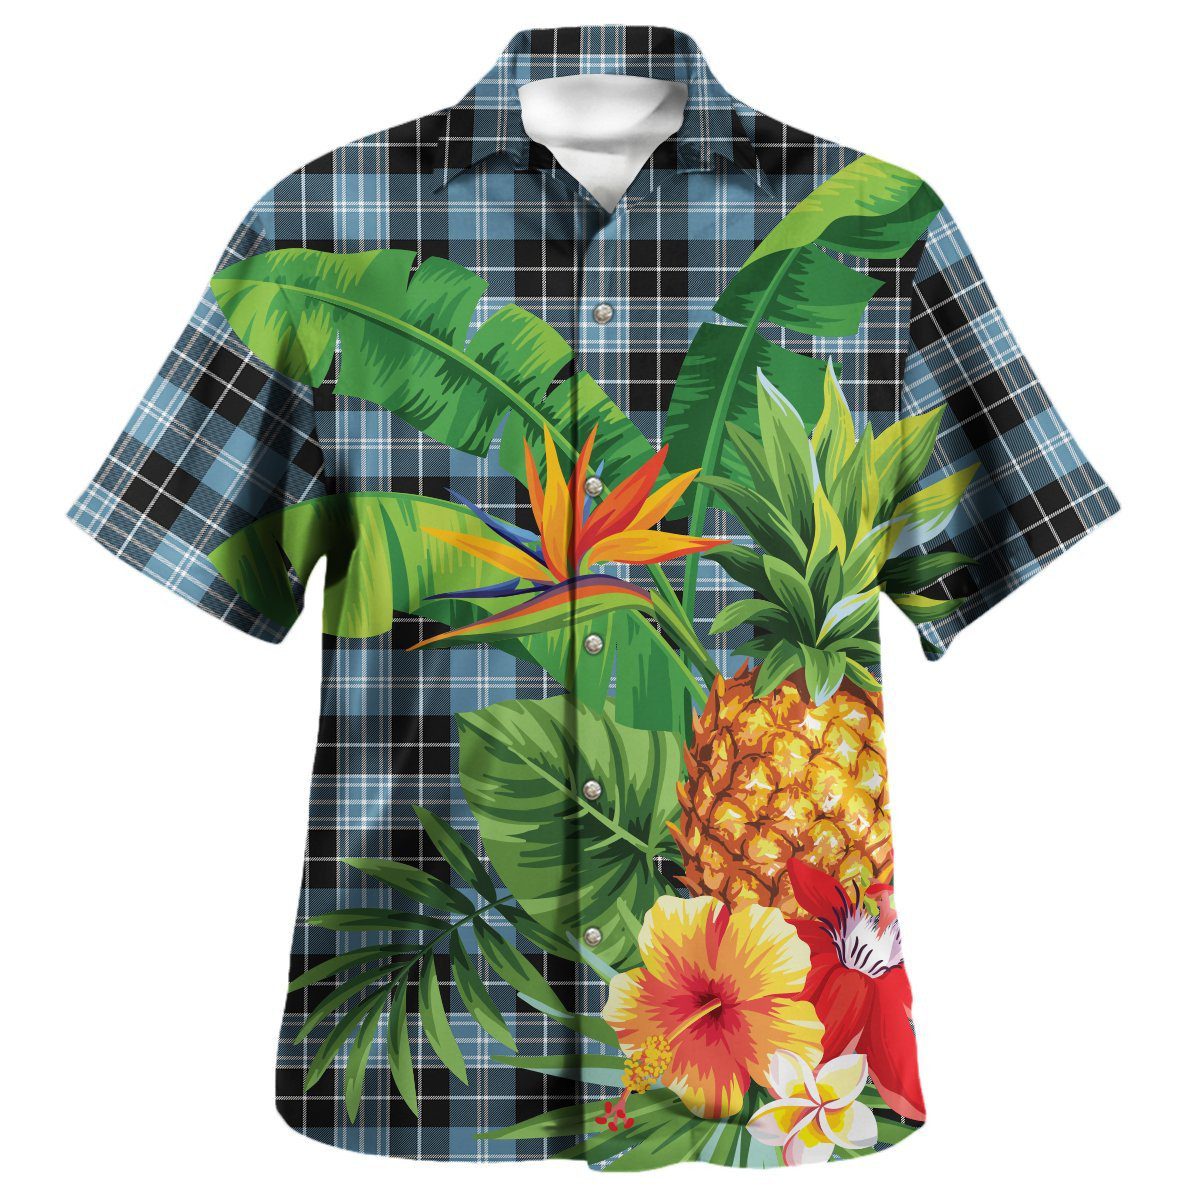 Clark Ancient Tartan Aloha Shirt version 2